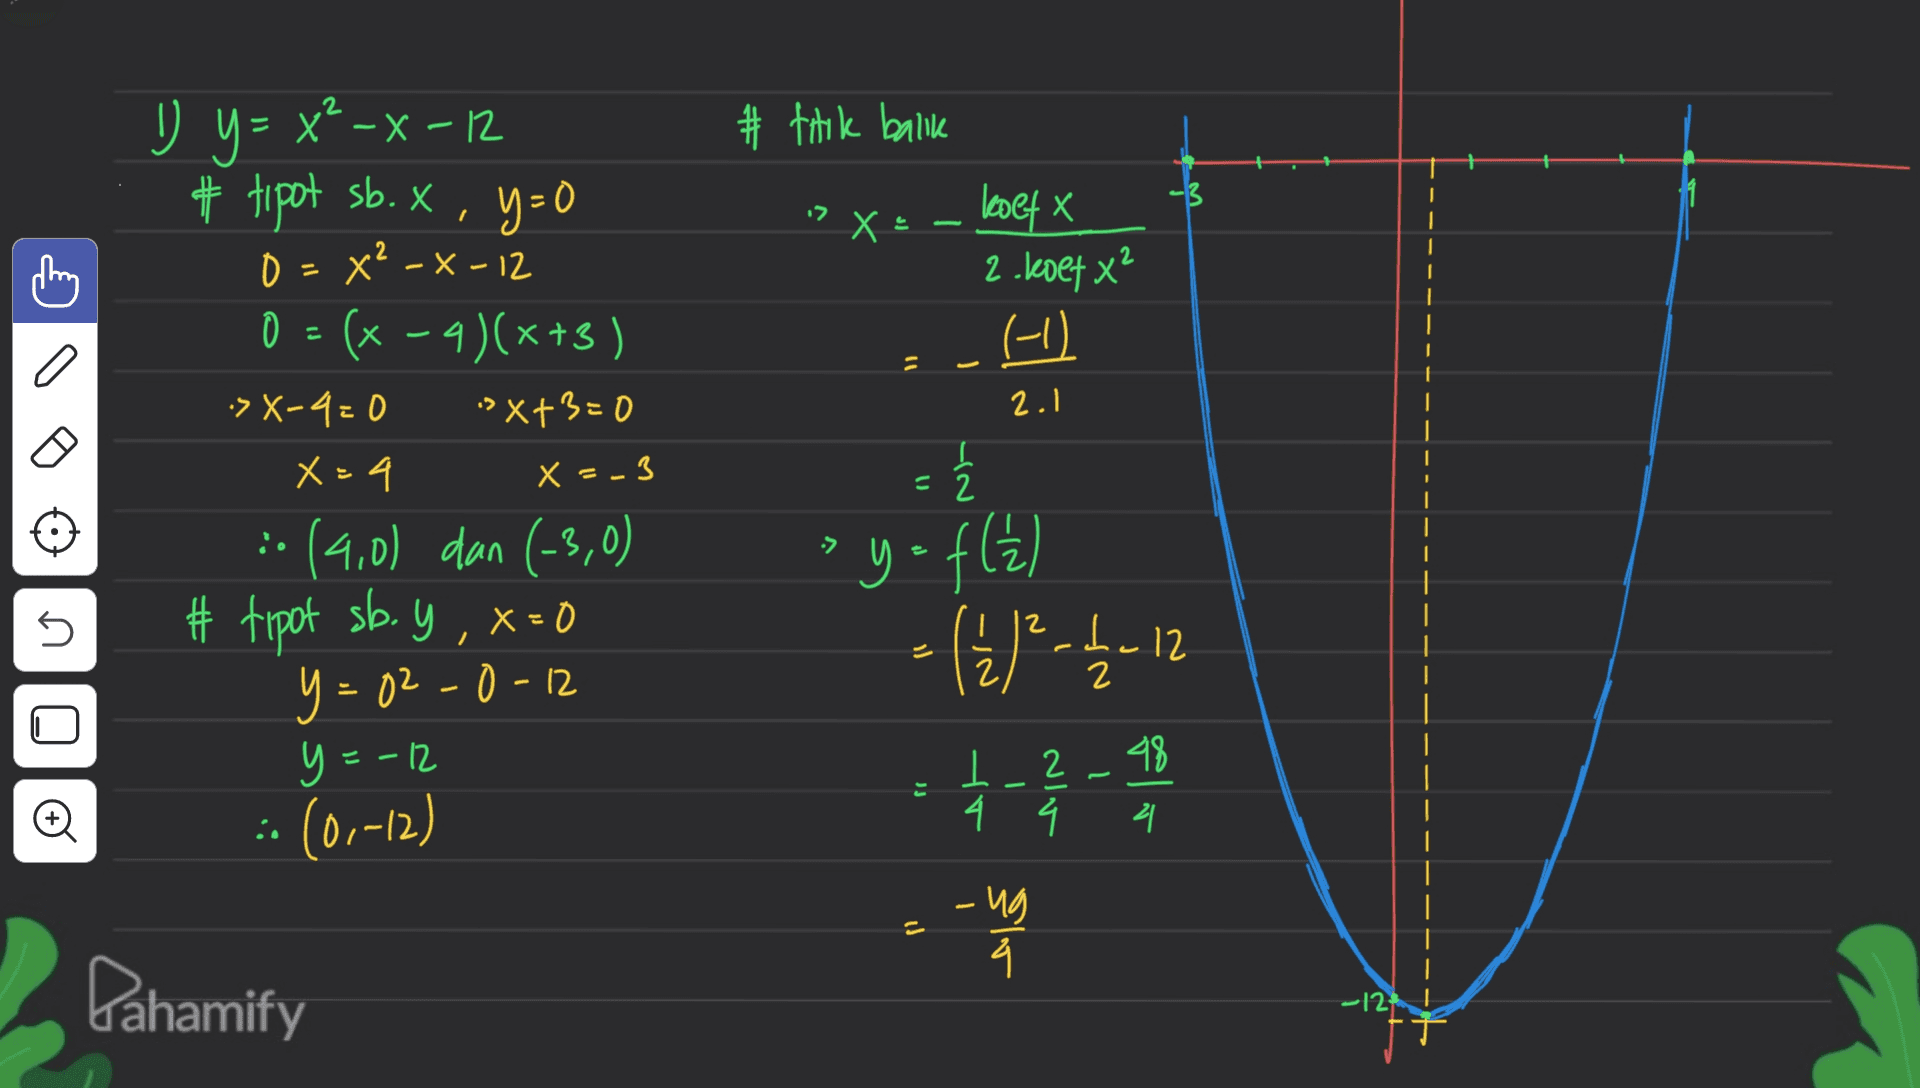 y # titik balik .2 X = 2 koetx 2.koet x² (1) | a 11 2.1 U y = x²-x-12 =X - # tipot sb. X, y=0 x y 0 = - x x²-x-12 =(x-4)(x+3) >X-4=0 "X+3=0 X = 4 :. (4,0) dan (-3,0) #tipot sb. y ,x=0 0 y=02-0-12 y=-12 :- (0.-12) x = -3 = 2 늘 iyo fla 5 12 (u)-1_12 do ) 2 48 ここ I 4 : 리 -ng - als Pahamify -12 